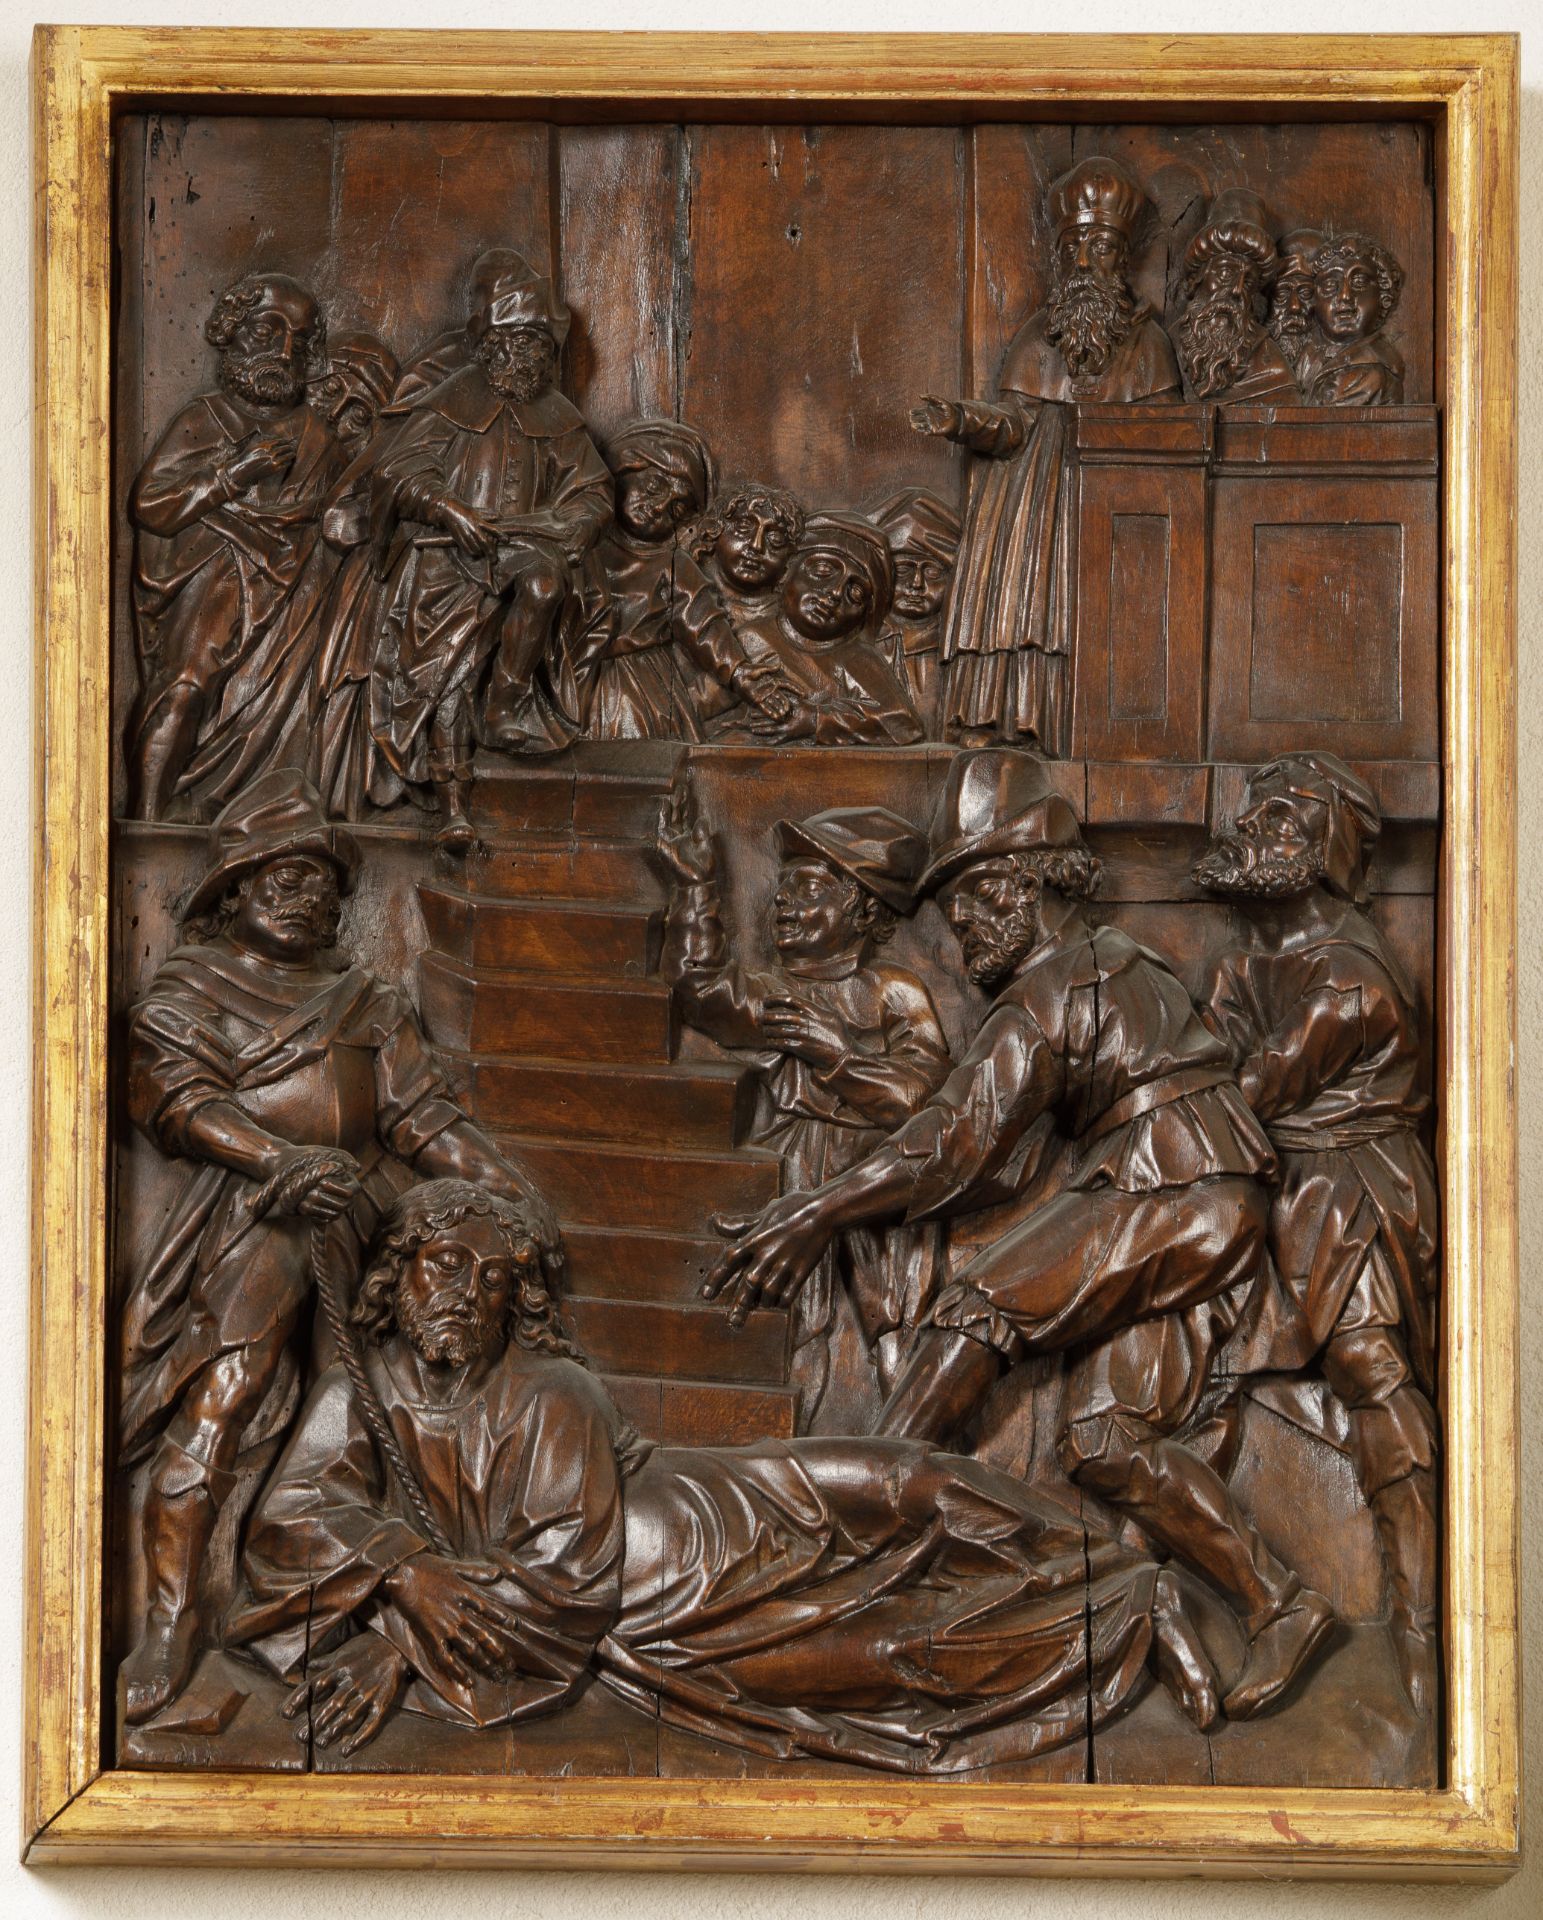 Panneau de bois de noyer sculpté illustrant la comparution du Christ devant Pilate 16 eme siècle